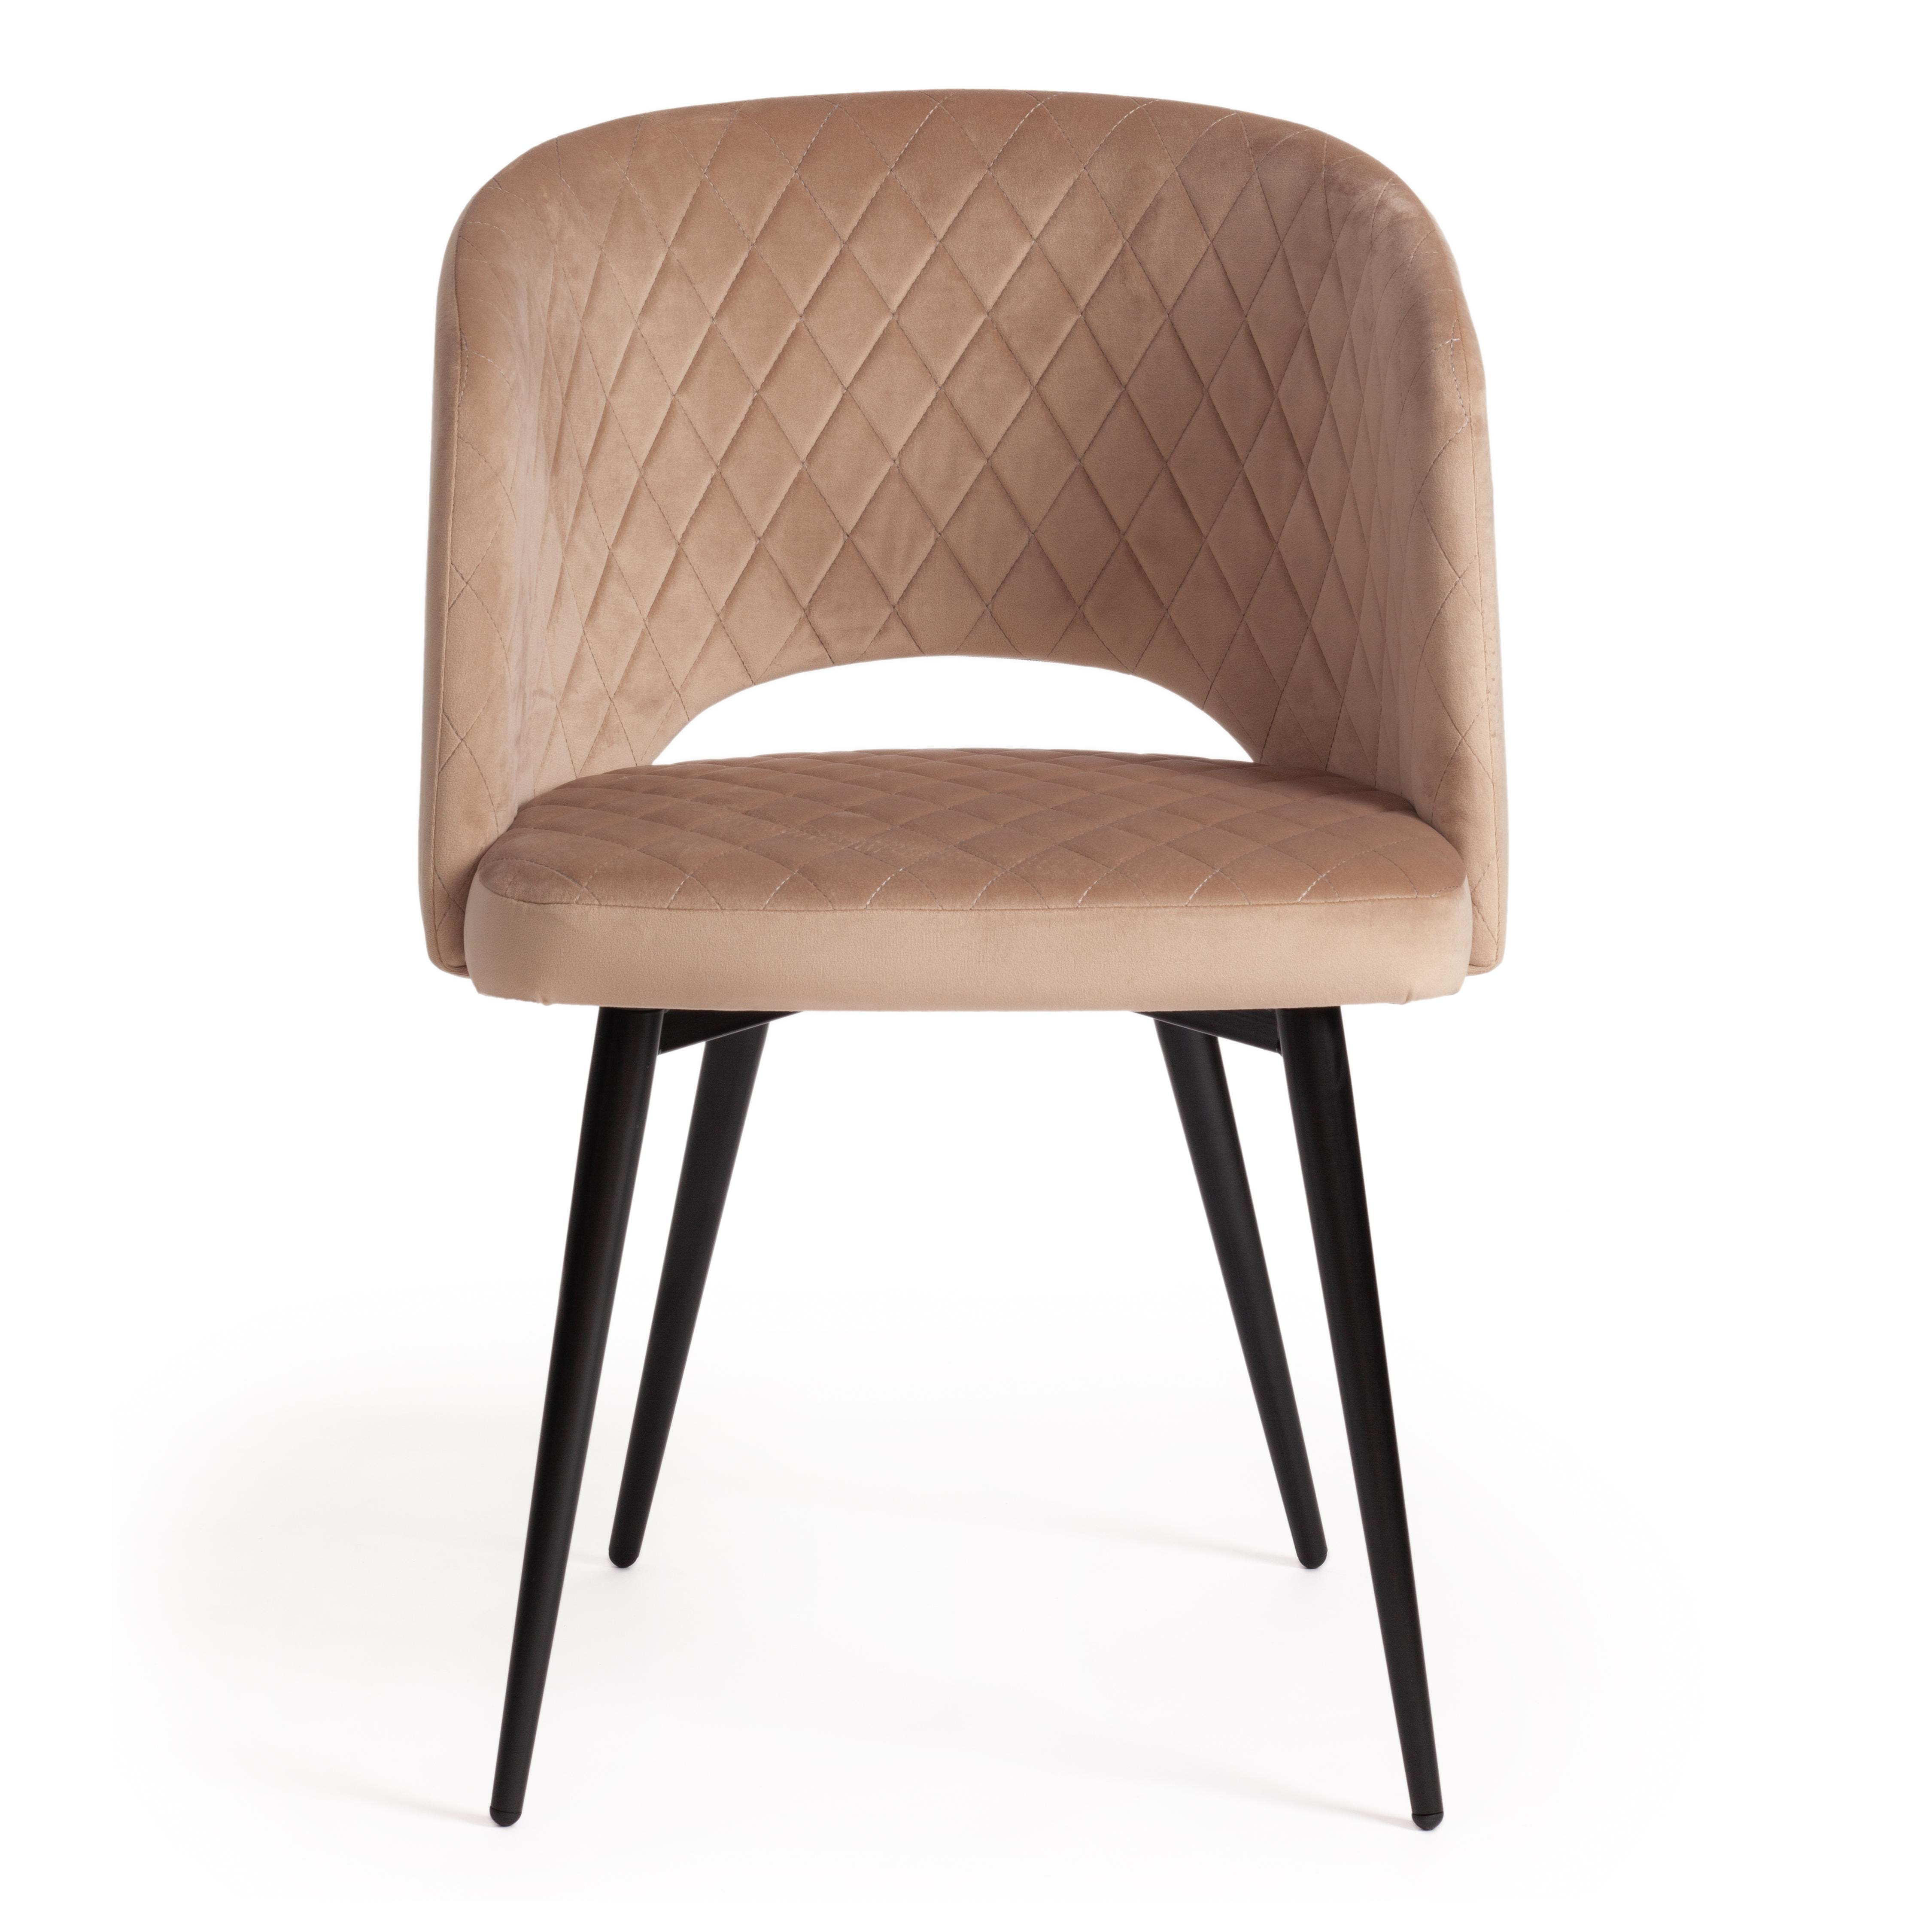 Мягкое кресло с подлокотниками на металлическом каркасе, обивка мебельная ткань бежевого цвета